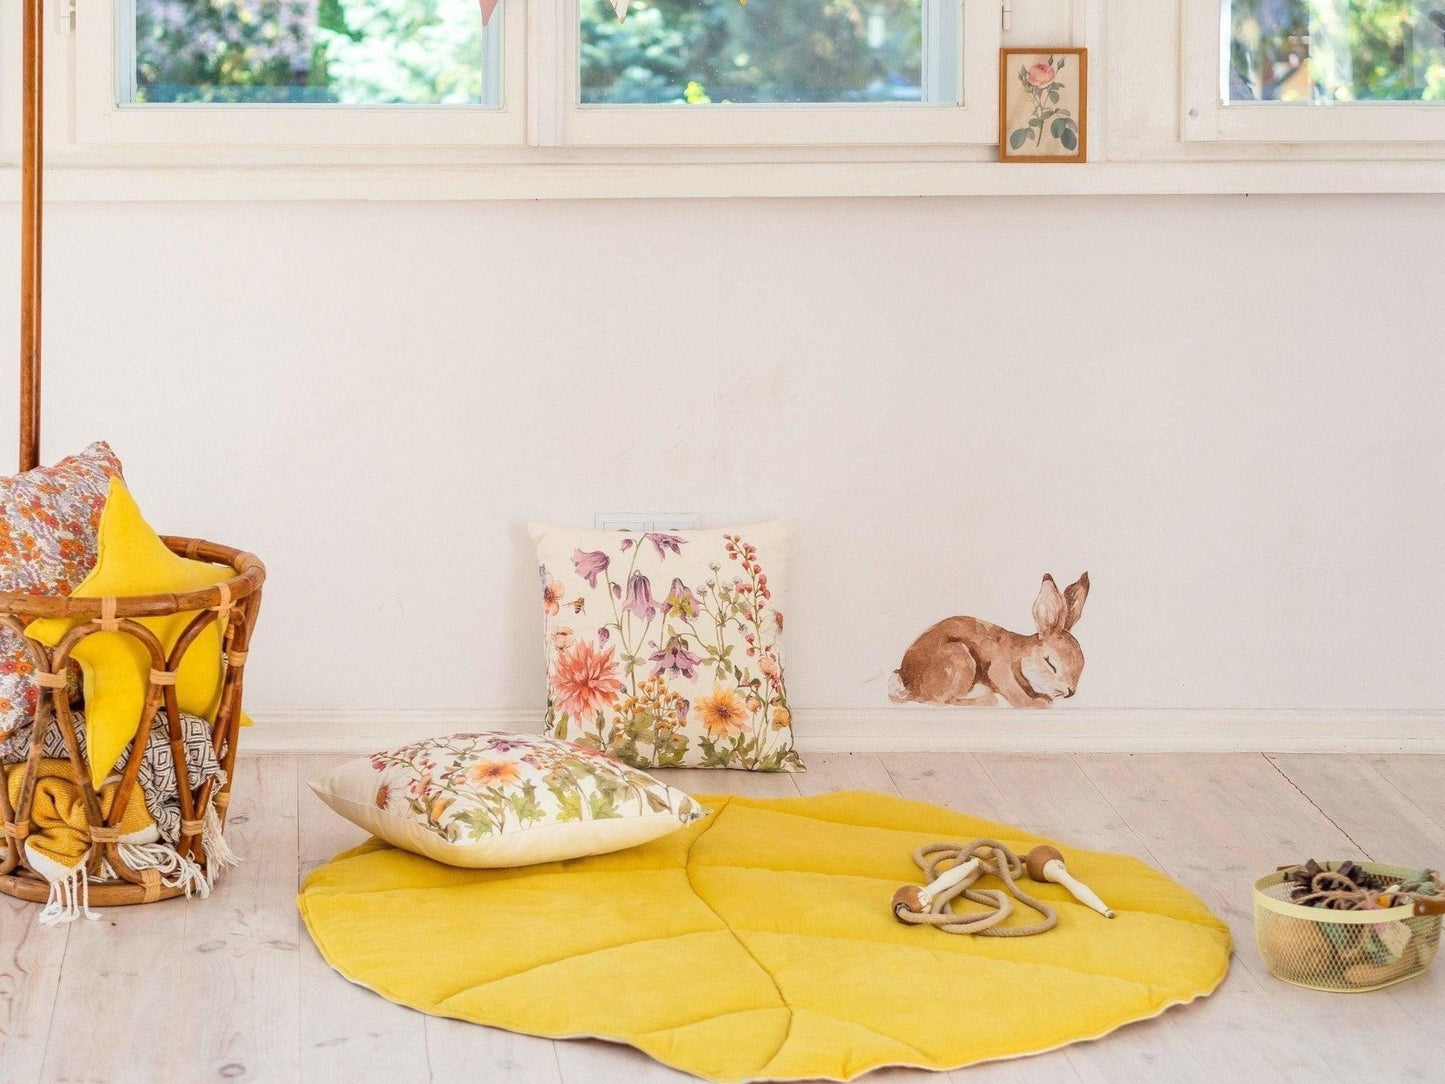 Throw Pillow “Wildflowers”  | Kids Room & Nursery Decor